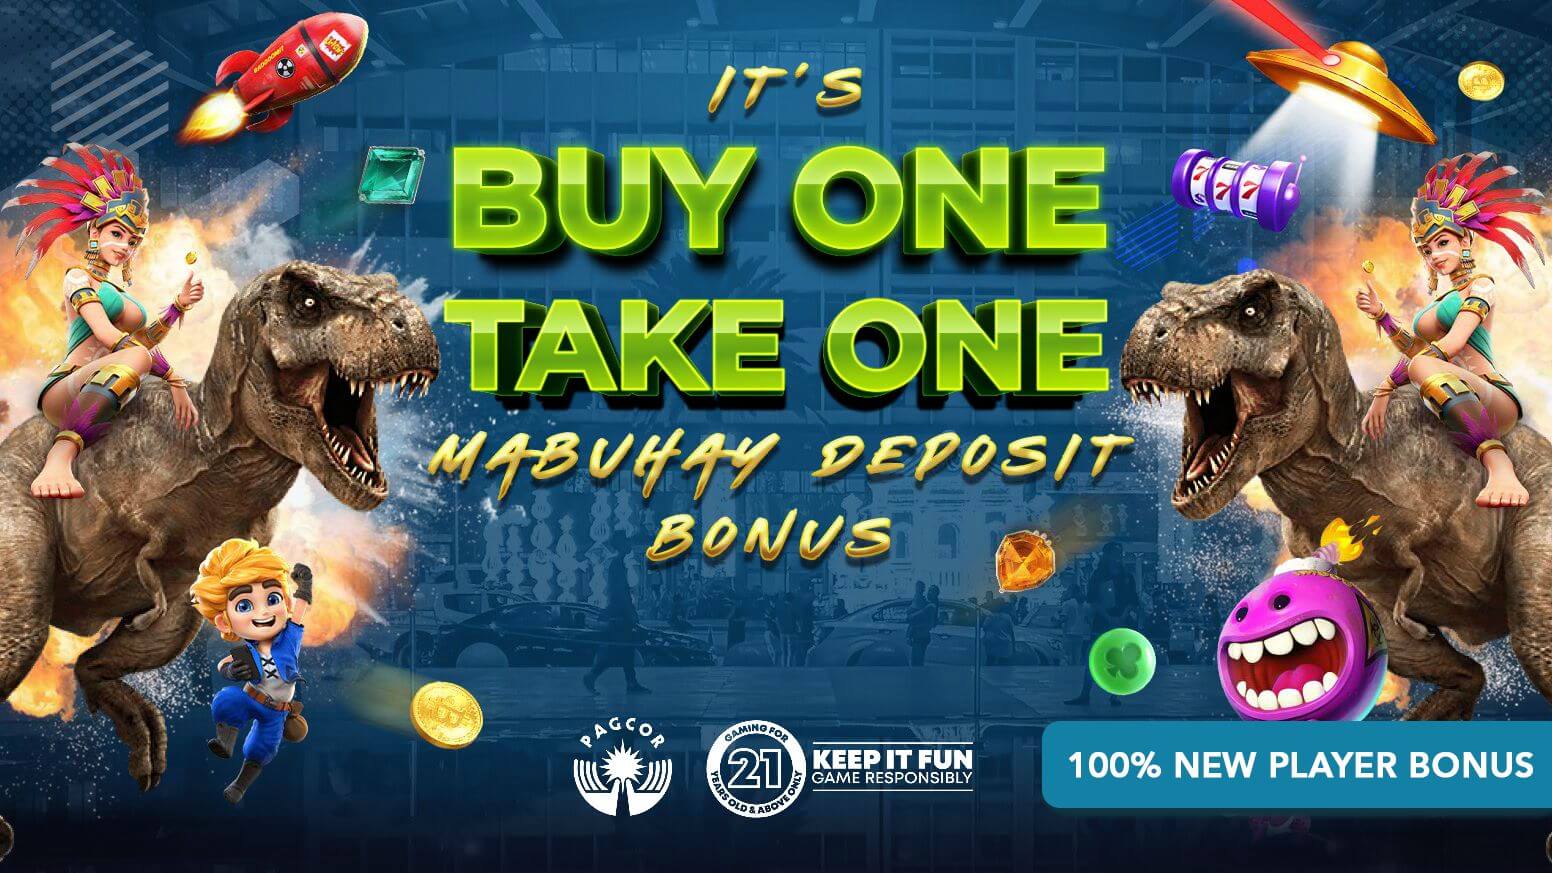 Buy One Take One - 1st Time Deposit 100% Bonus